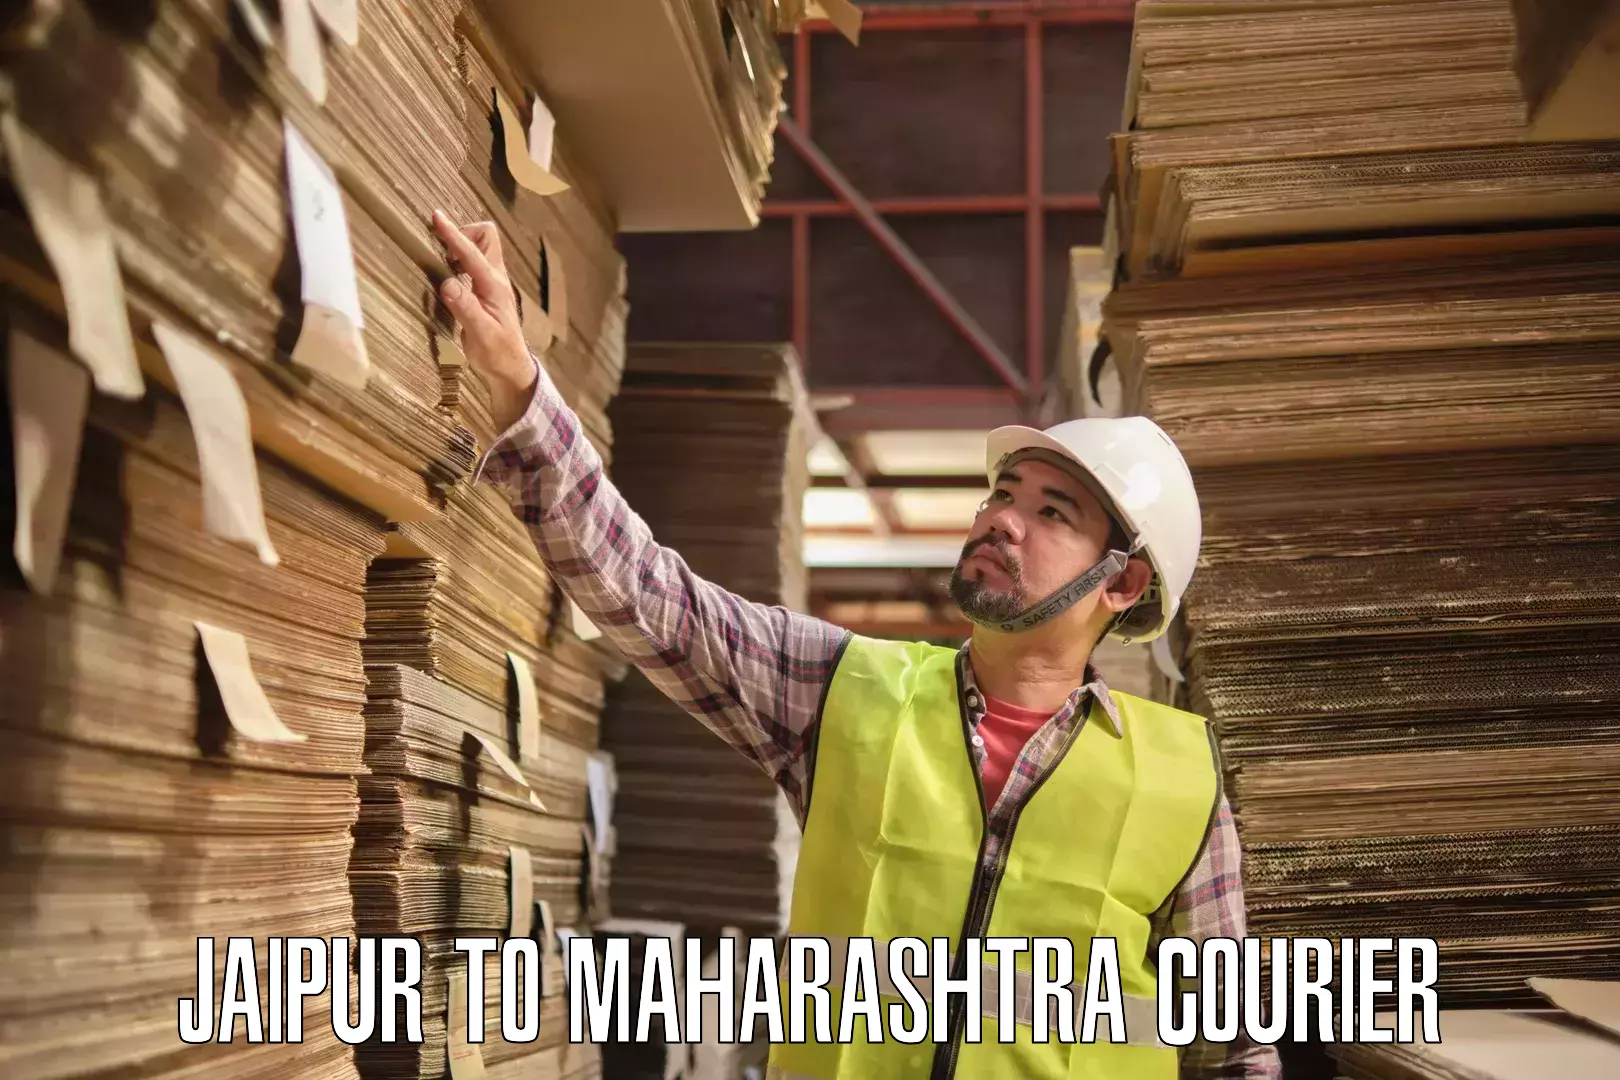 Reliable logistics providers Jaipur to Maharashtra